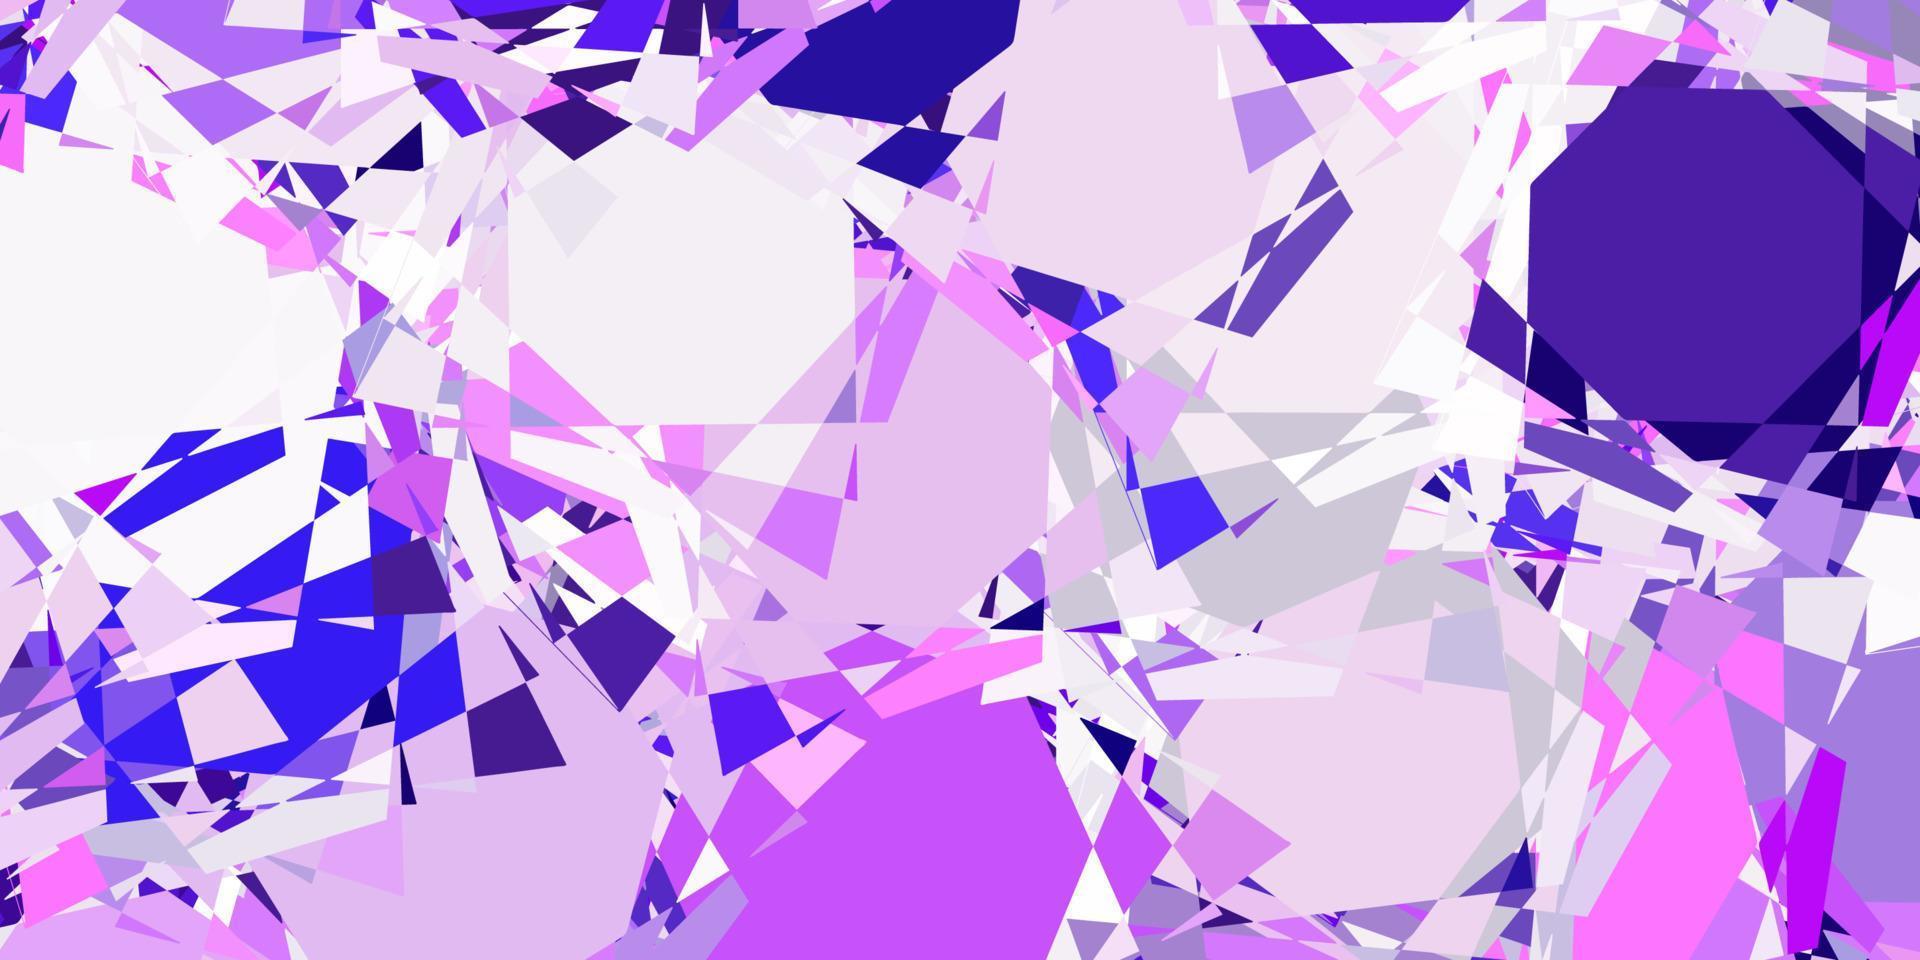 texture vettoriale viola chiaro con triangoli casuali.